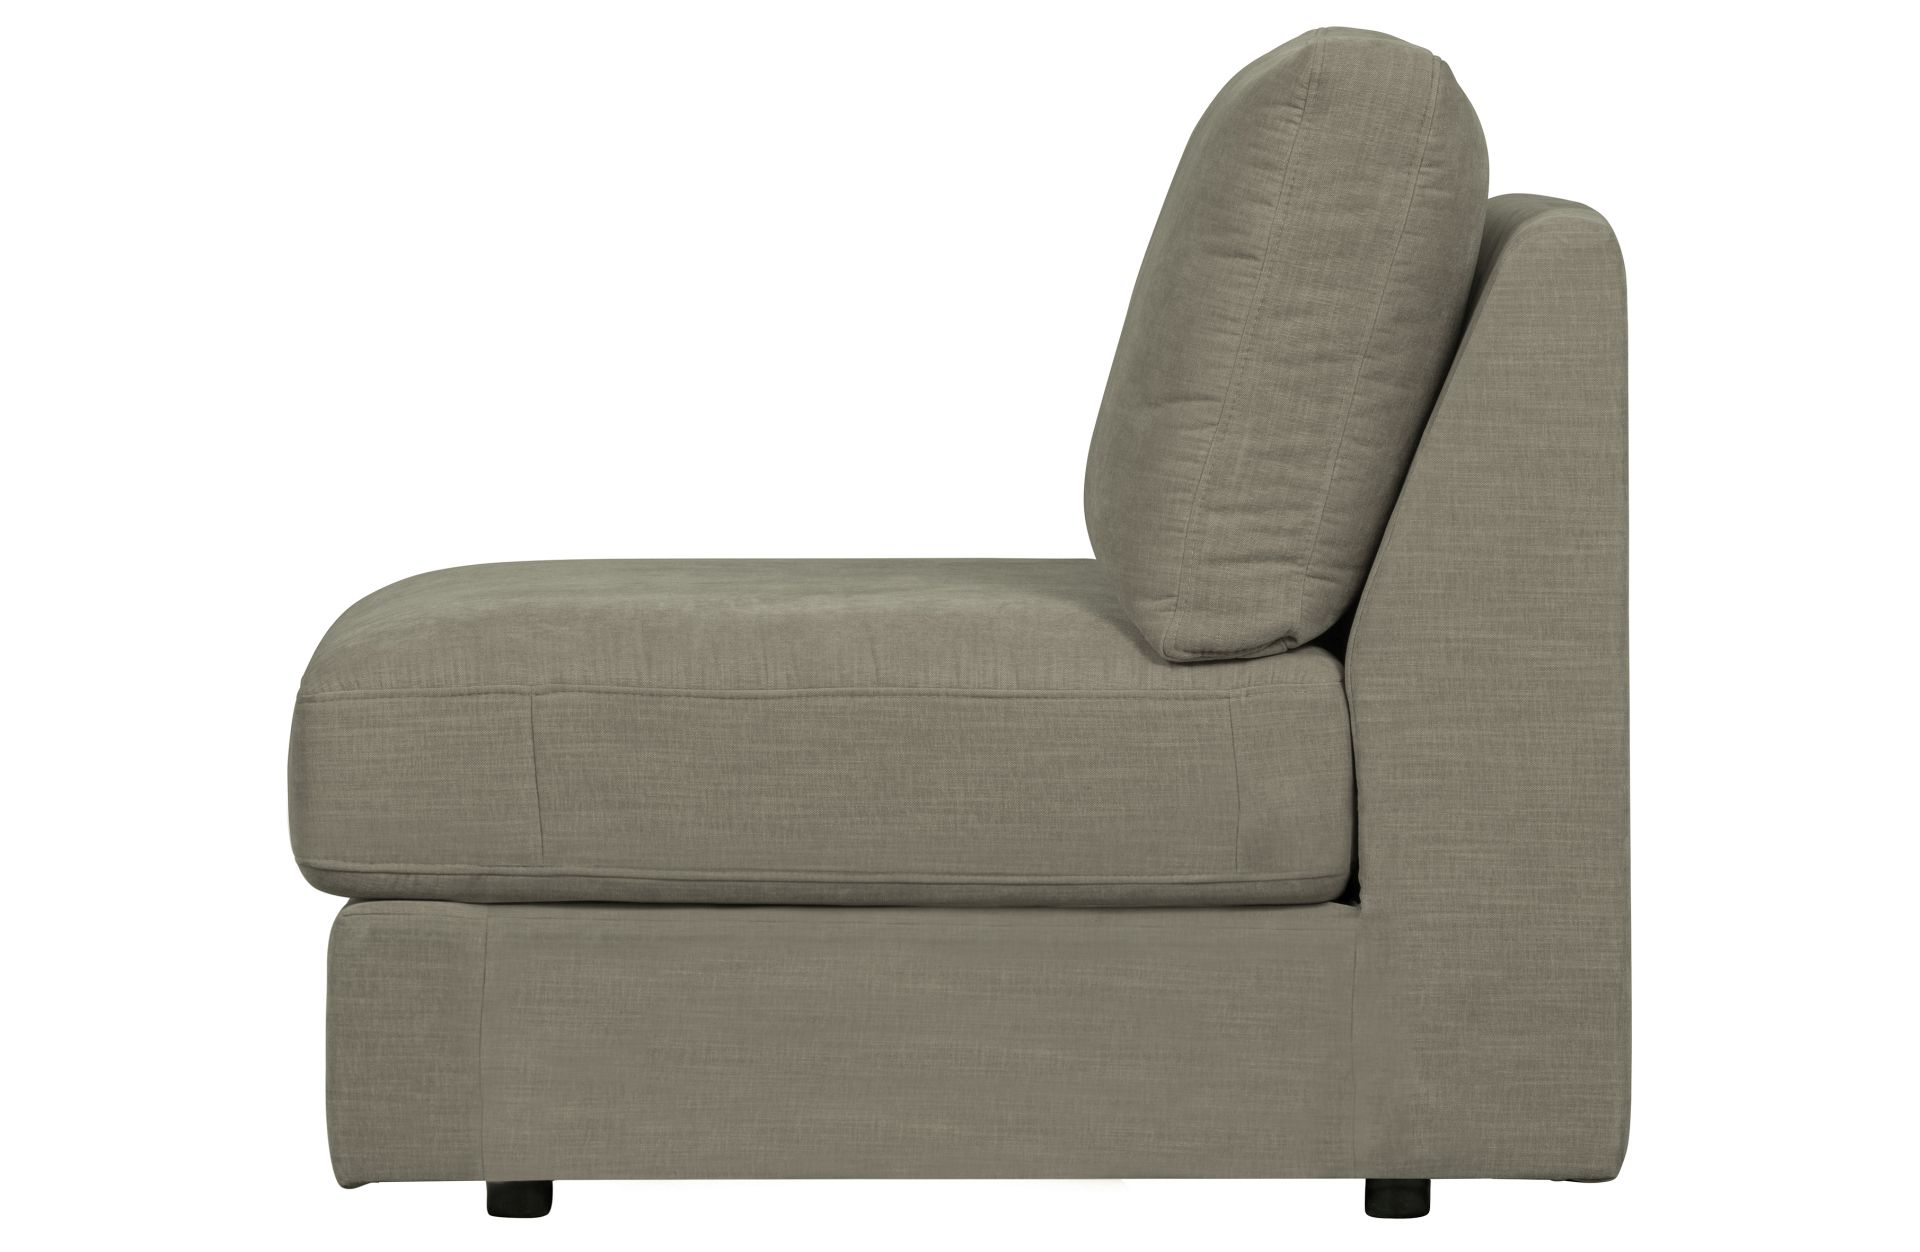 Das Modulsofa Family überzeugt mit seinem modernen Design. Das Seat Element wurde aus Gewebe-Stoff gefertigt, welcher einen einen grauen Farbton besitzen. Das Gestell ist aus Metall und hat eine schwarze Farbe. Das Element hat eine Sitzhöhe von 44 cm.